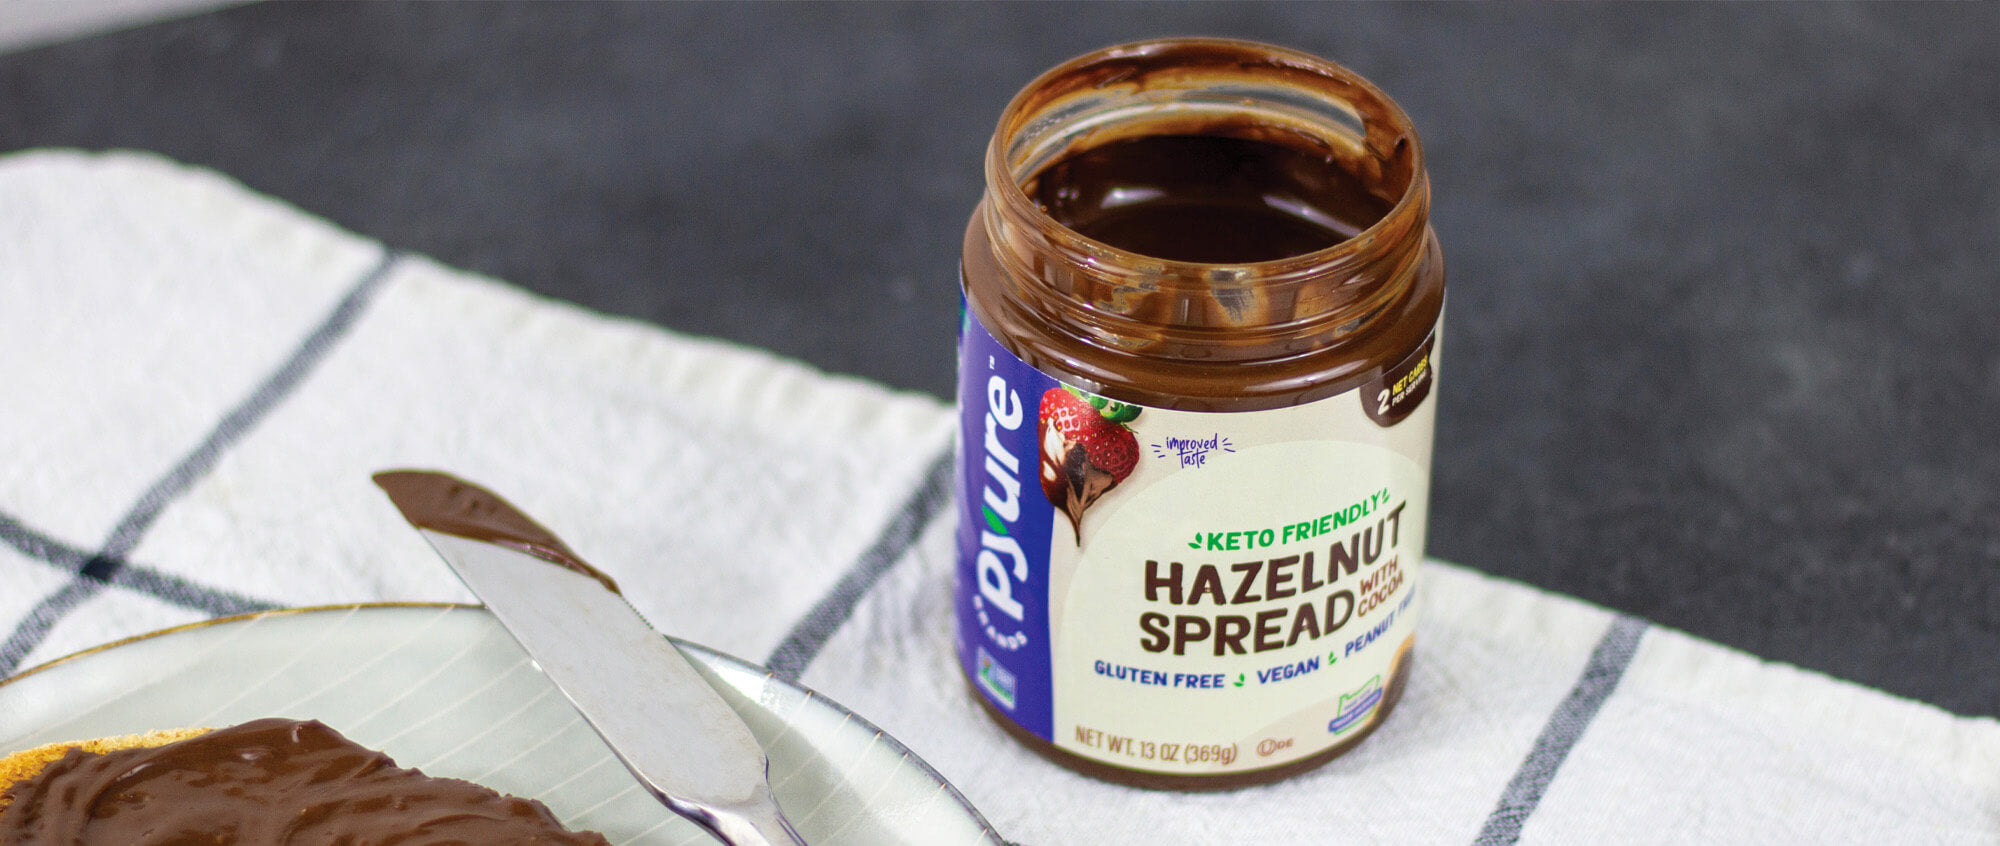 Pyure Hazelnut Spread. Nutella Alternatives you should try 